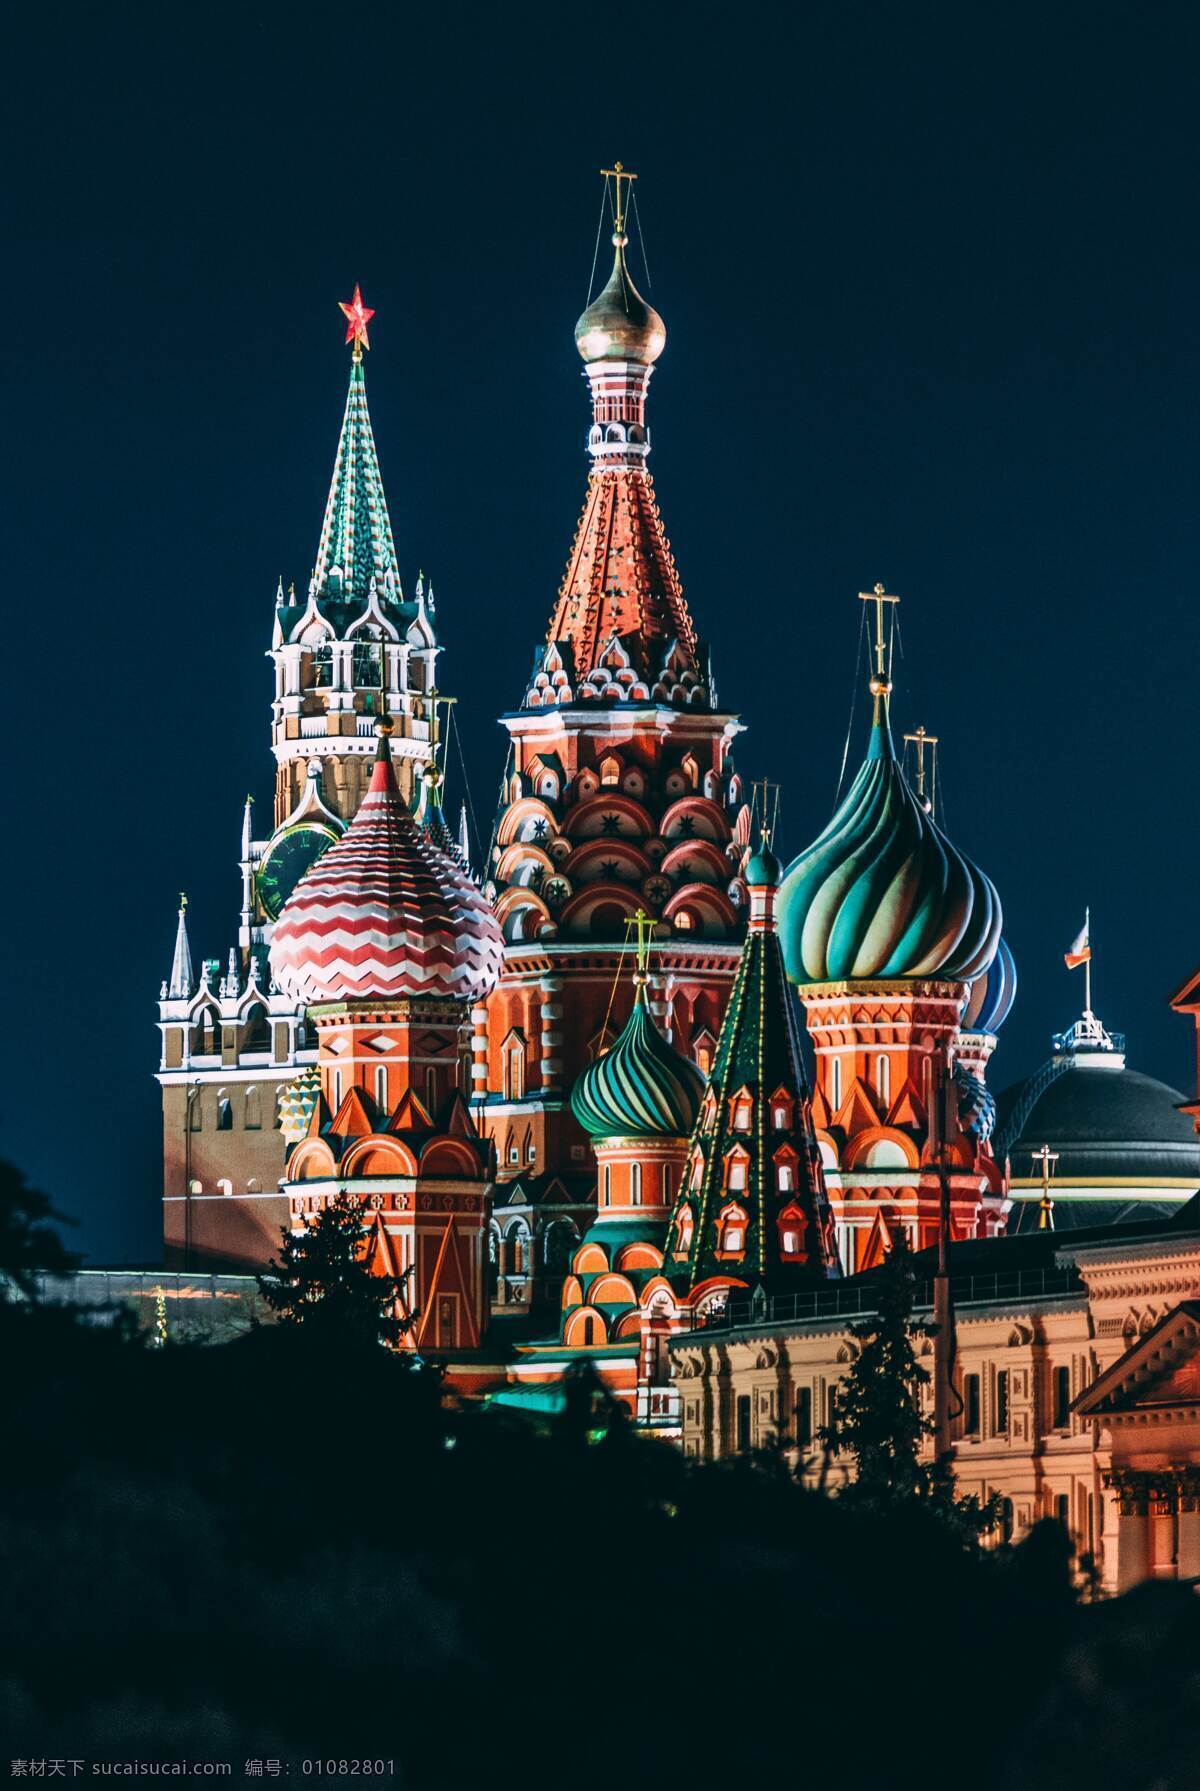 克里姆林宫 俄罗斯 莫斯科 俄罗斯首都 堡垒 塔楼 箭楼 世界第八奇景 红星 自然景观 建筑景观